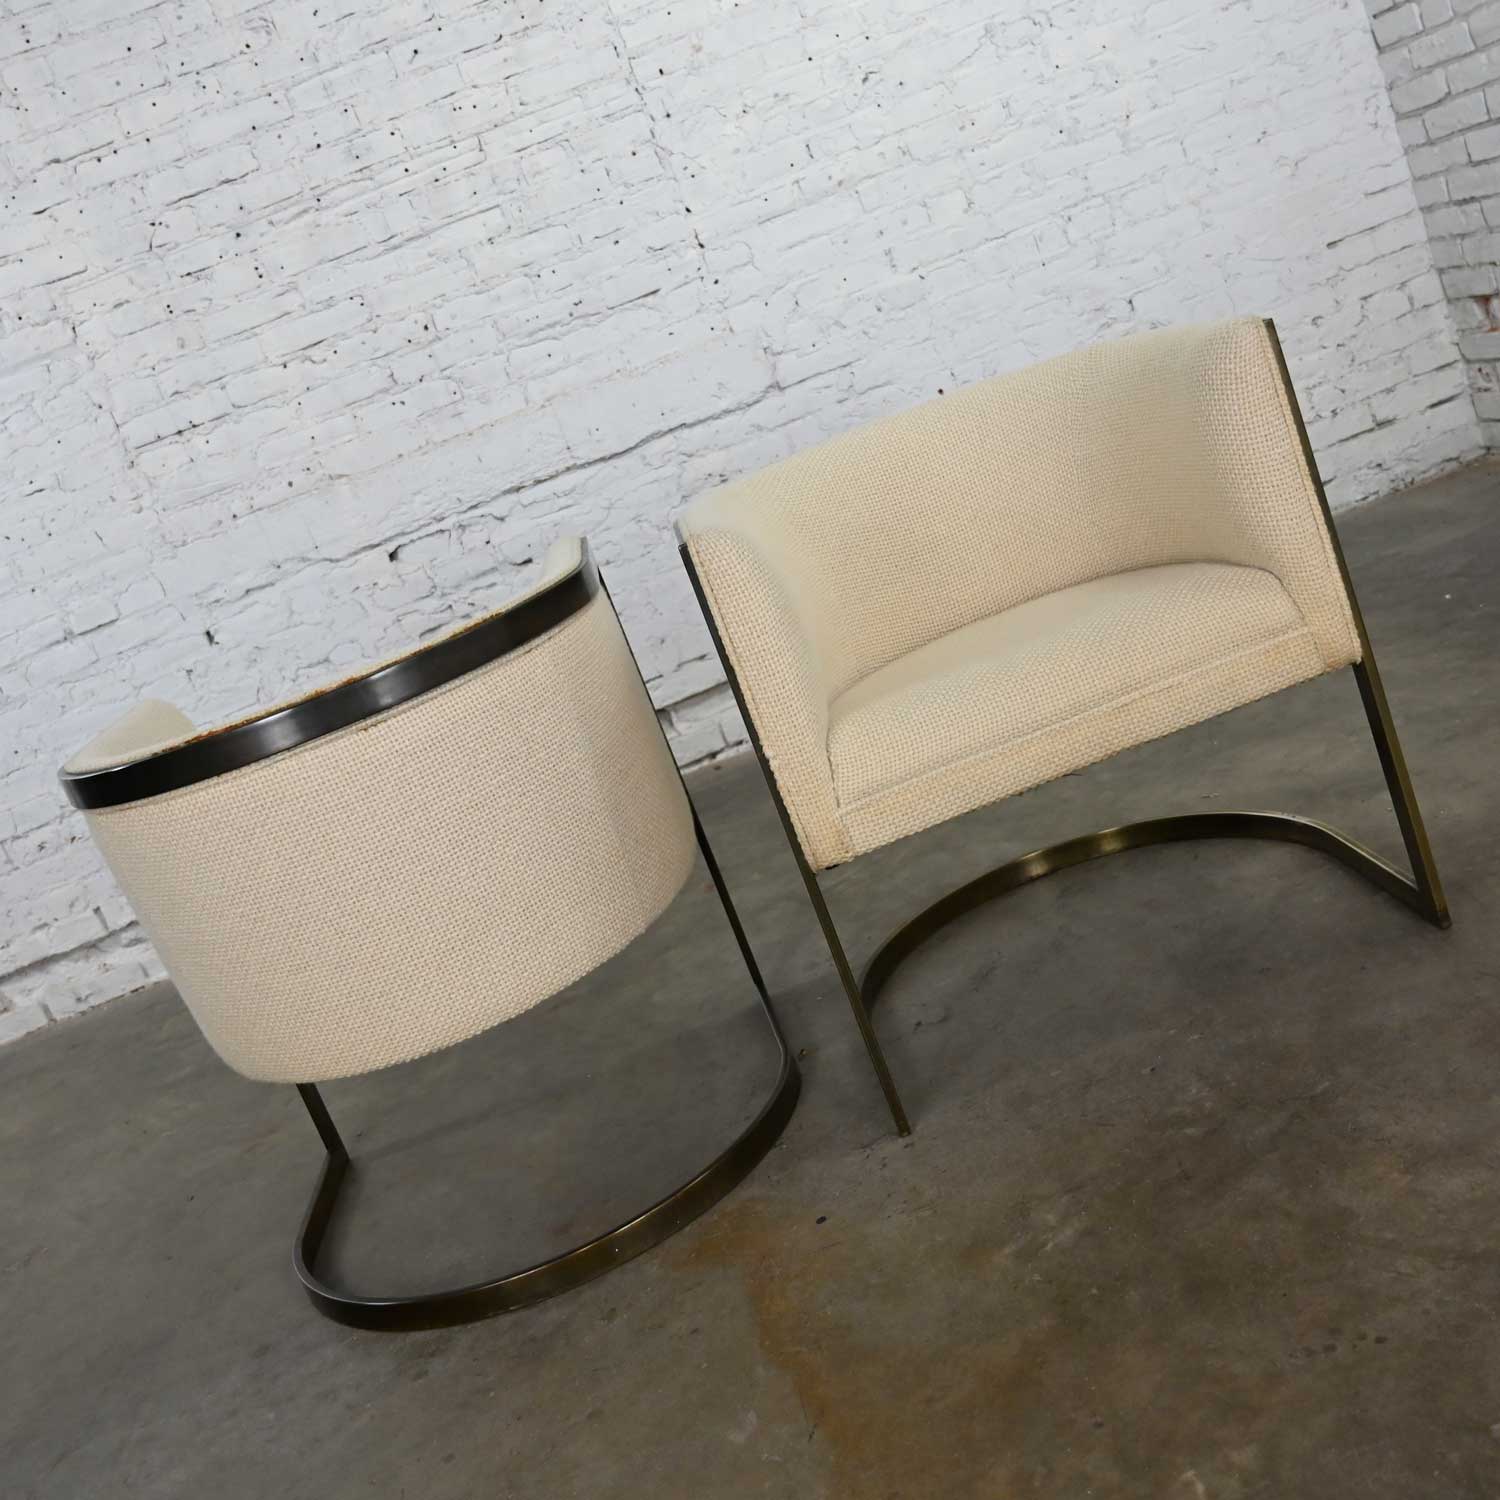 Metropolitan Furniture Modern White & Antique Brass Plate Tub Chairs by Jules Heumann a Pair